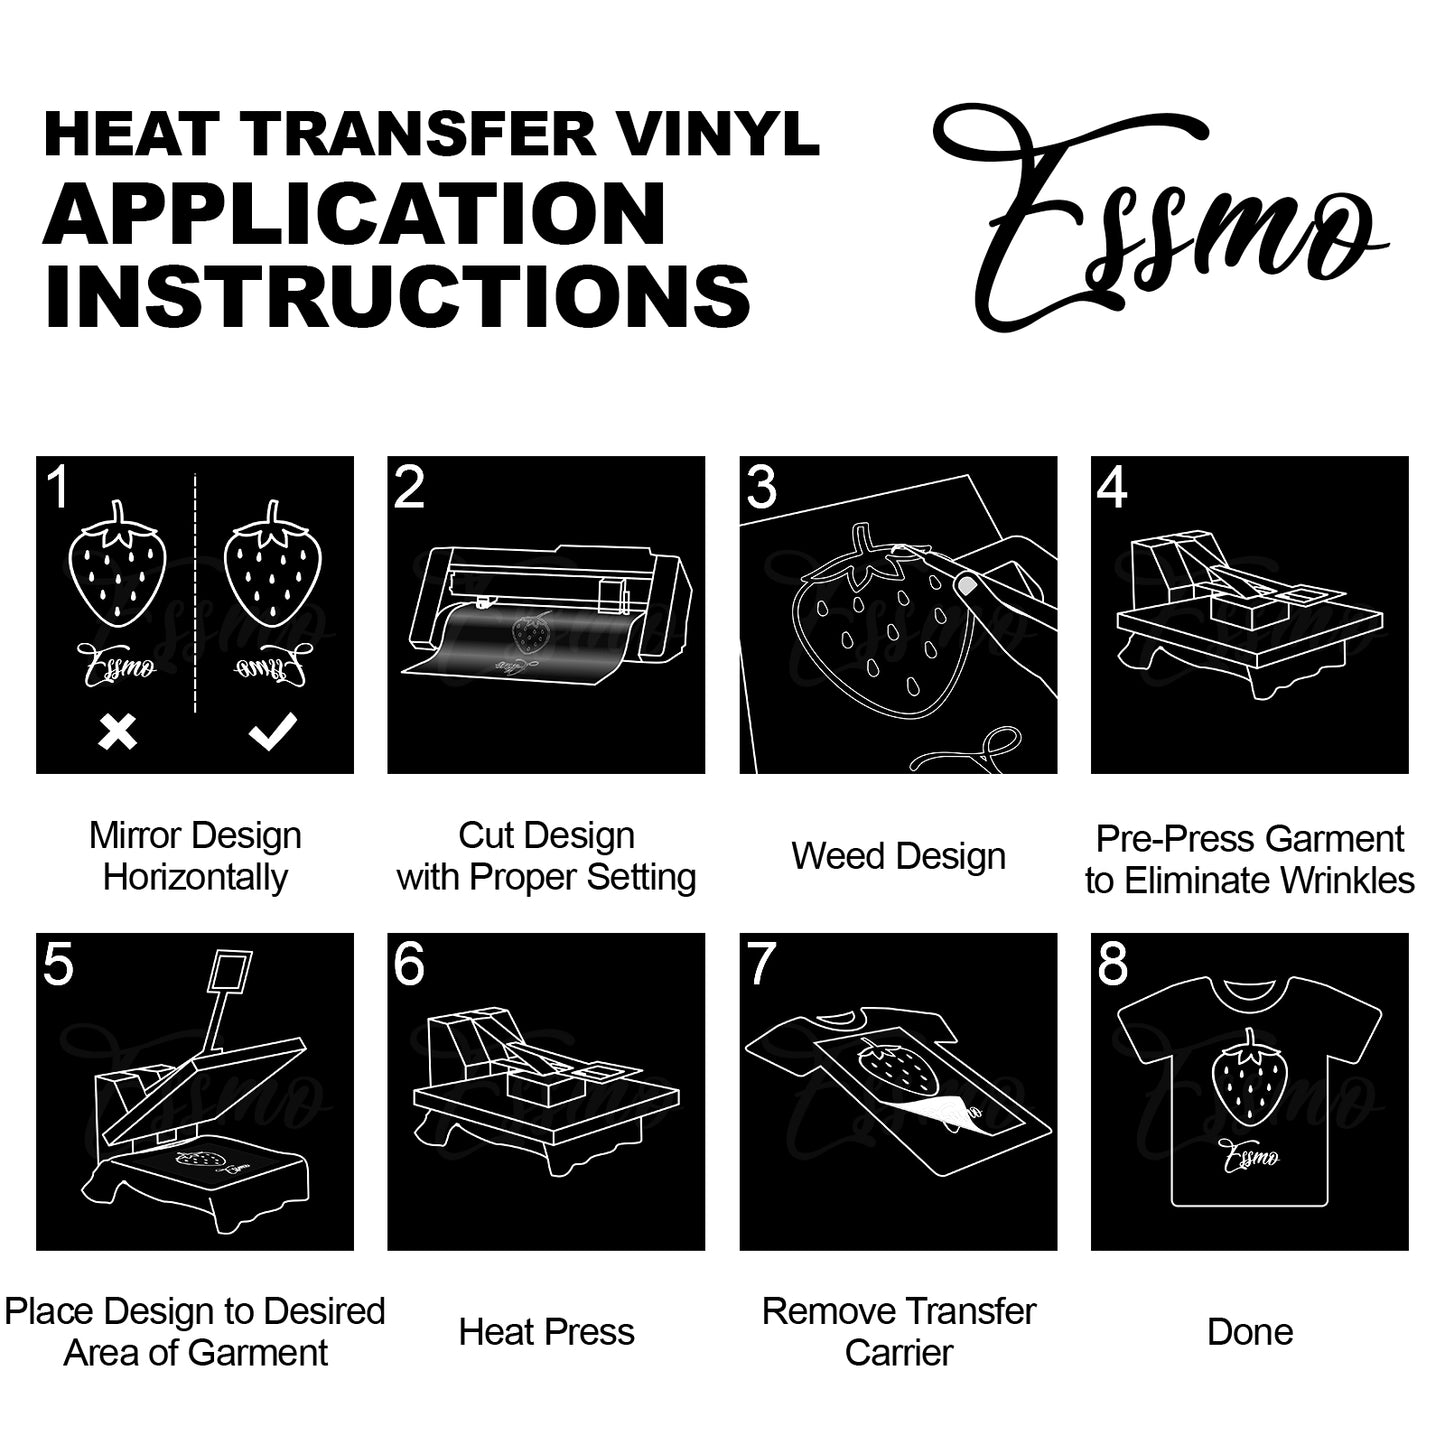 ESSMO™ Black Glitter Sparkle Heat Transfer Vinyl HTV DG01